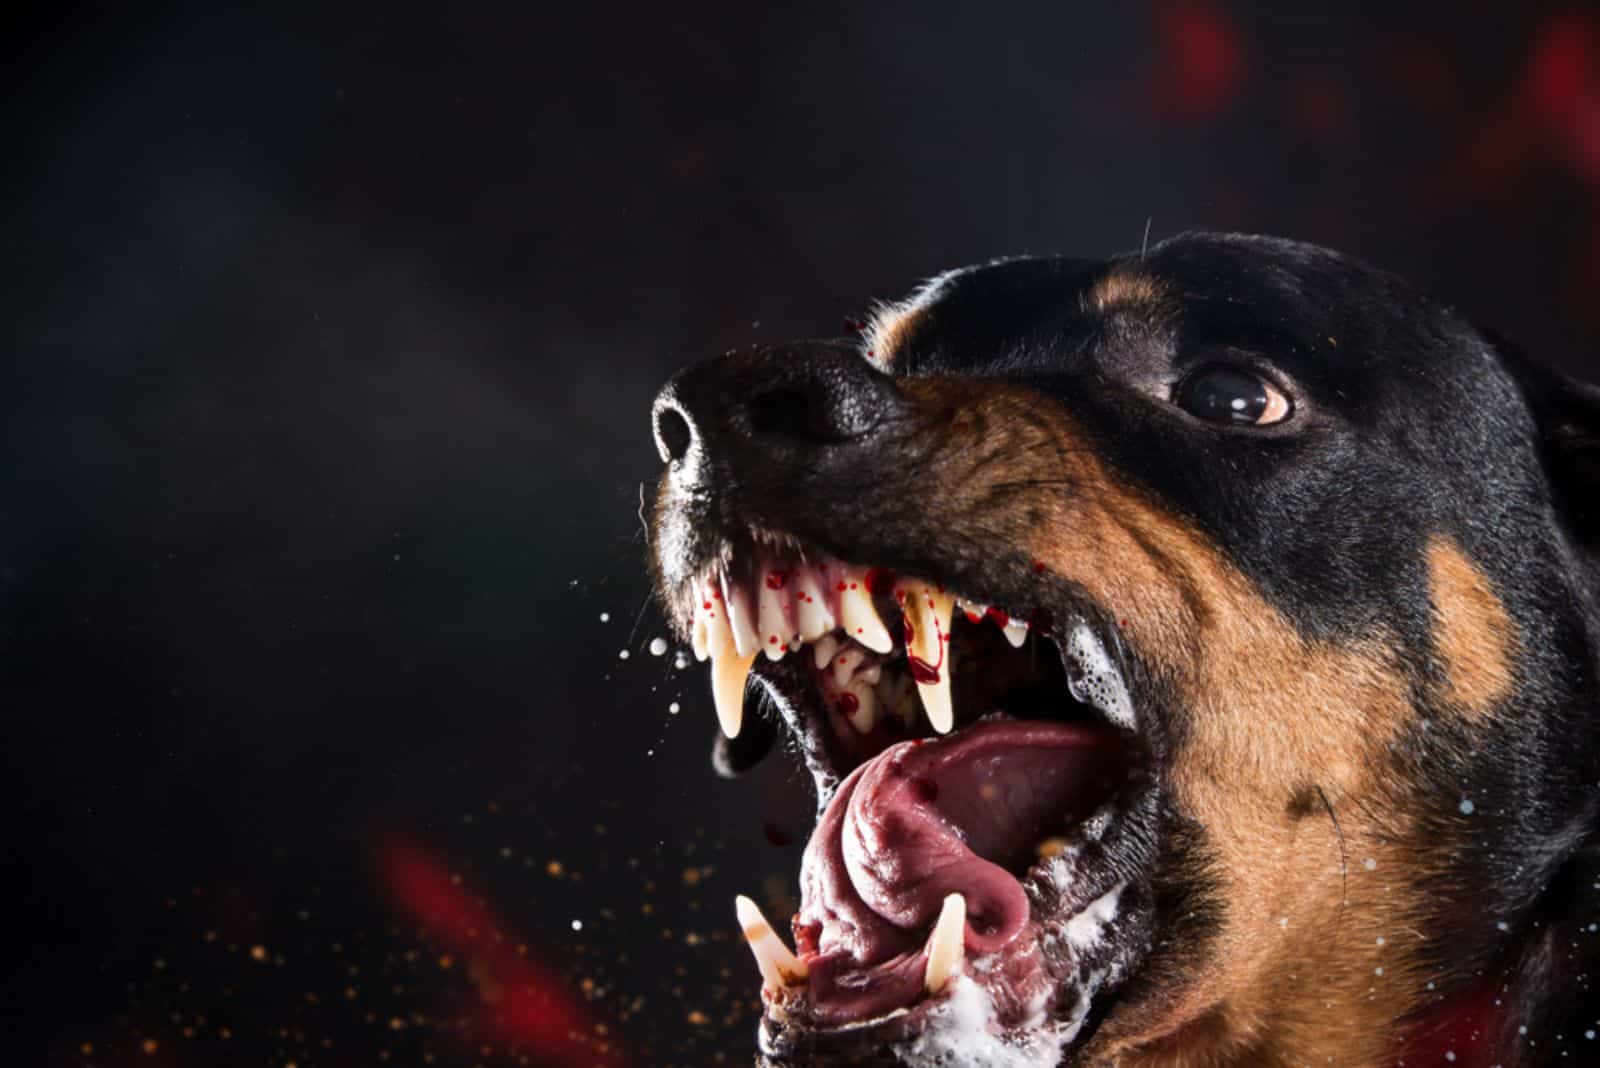 ferocious rottweiler barking